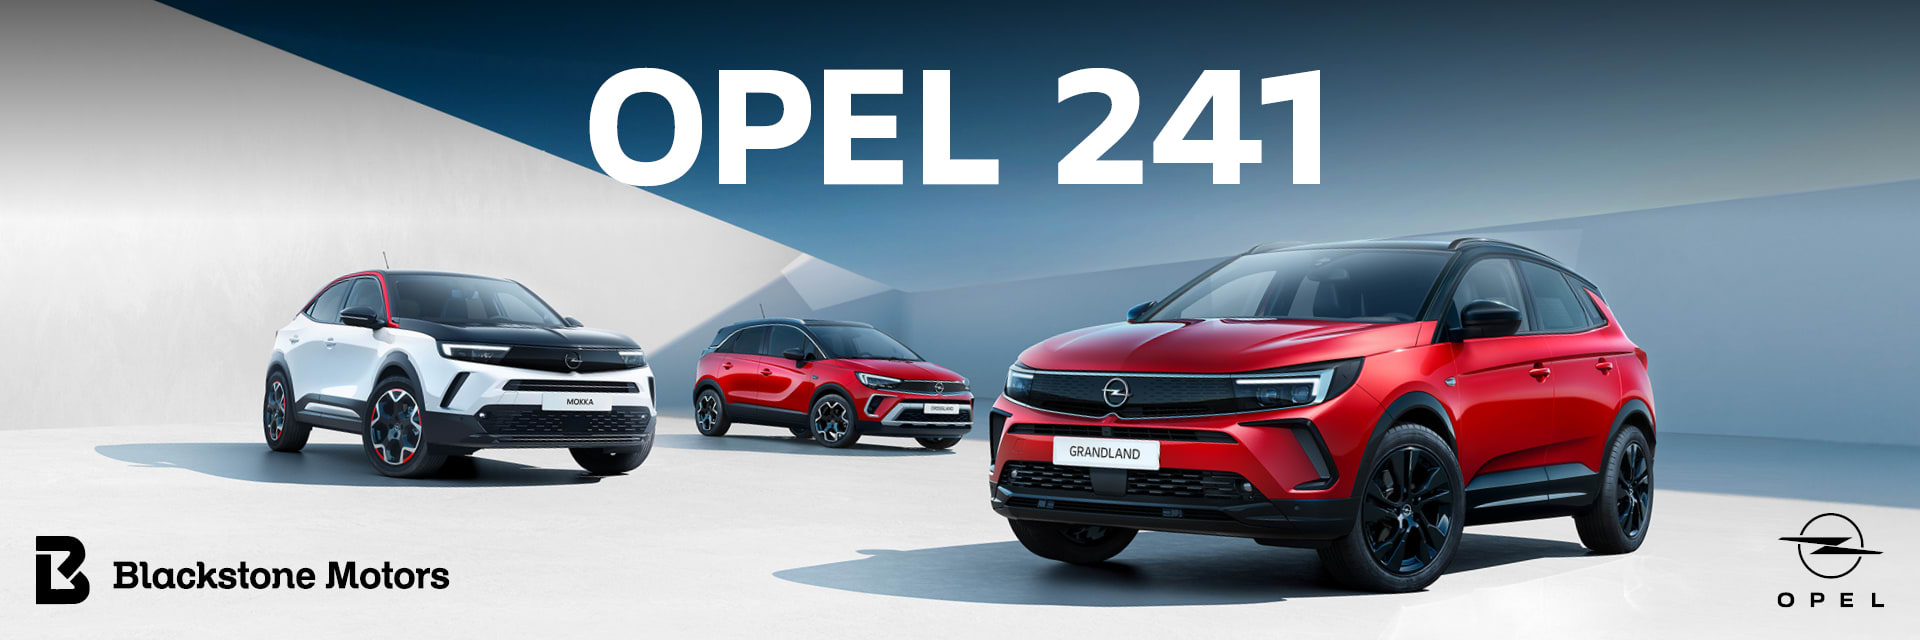 Opel 241